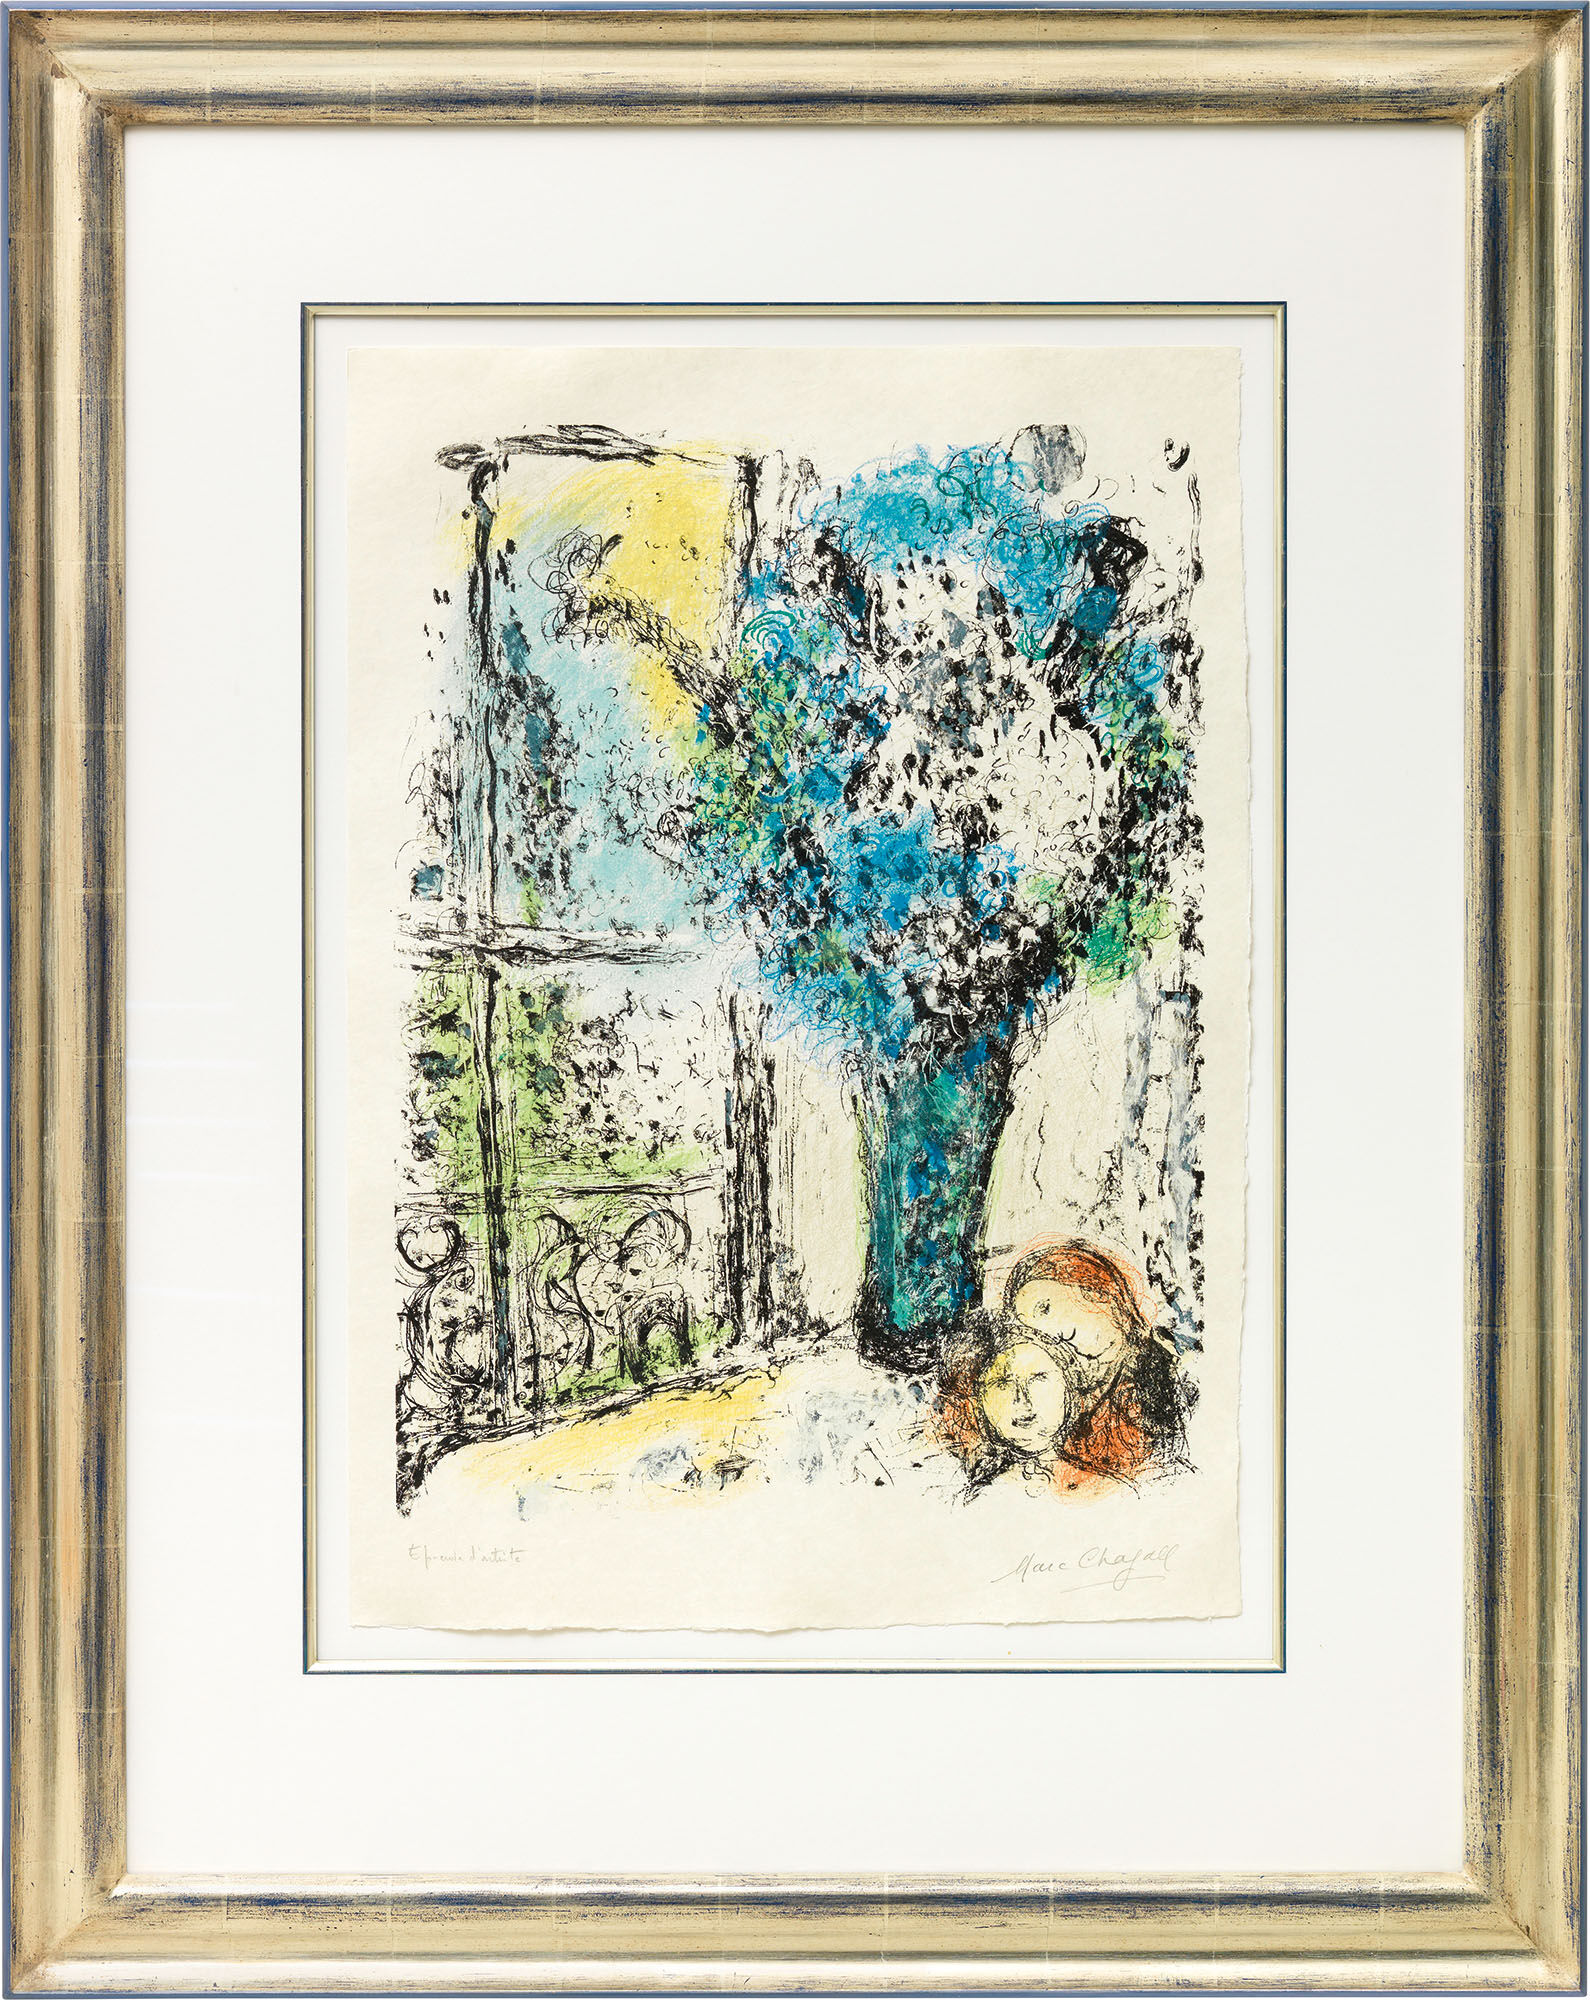 Tableau "Le Bouquet bleu" (1974) von Marc Chagall